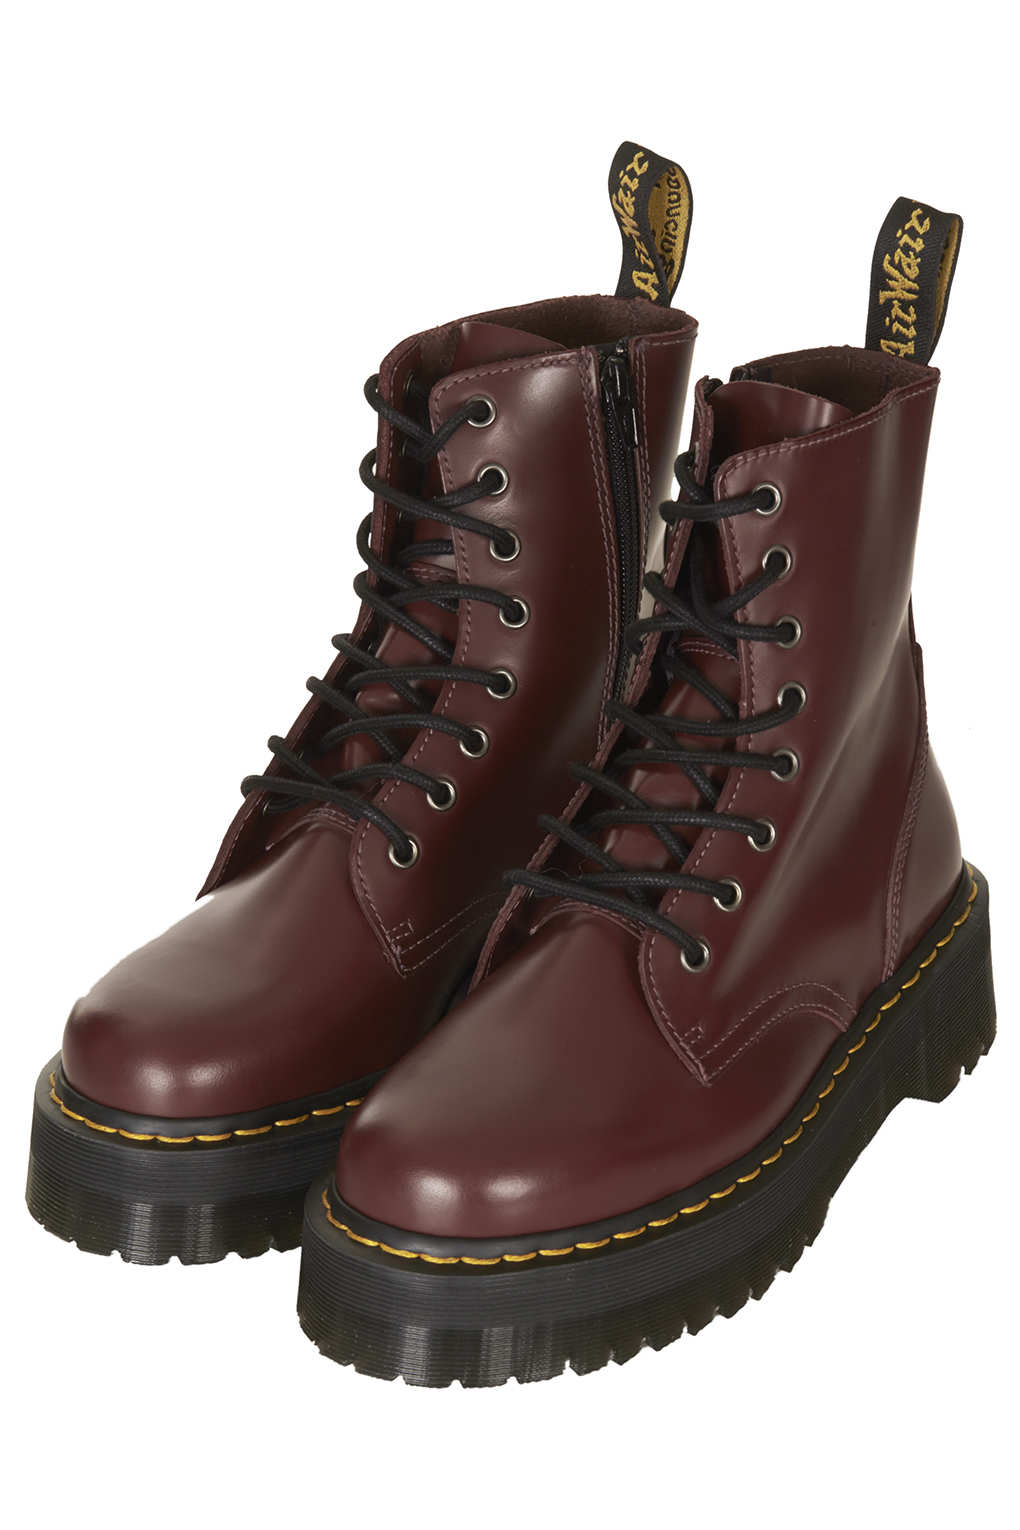 SOREL Girls Tofino II Waterproof Winter Boots, Black 